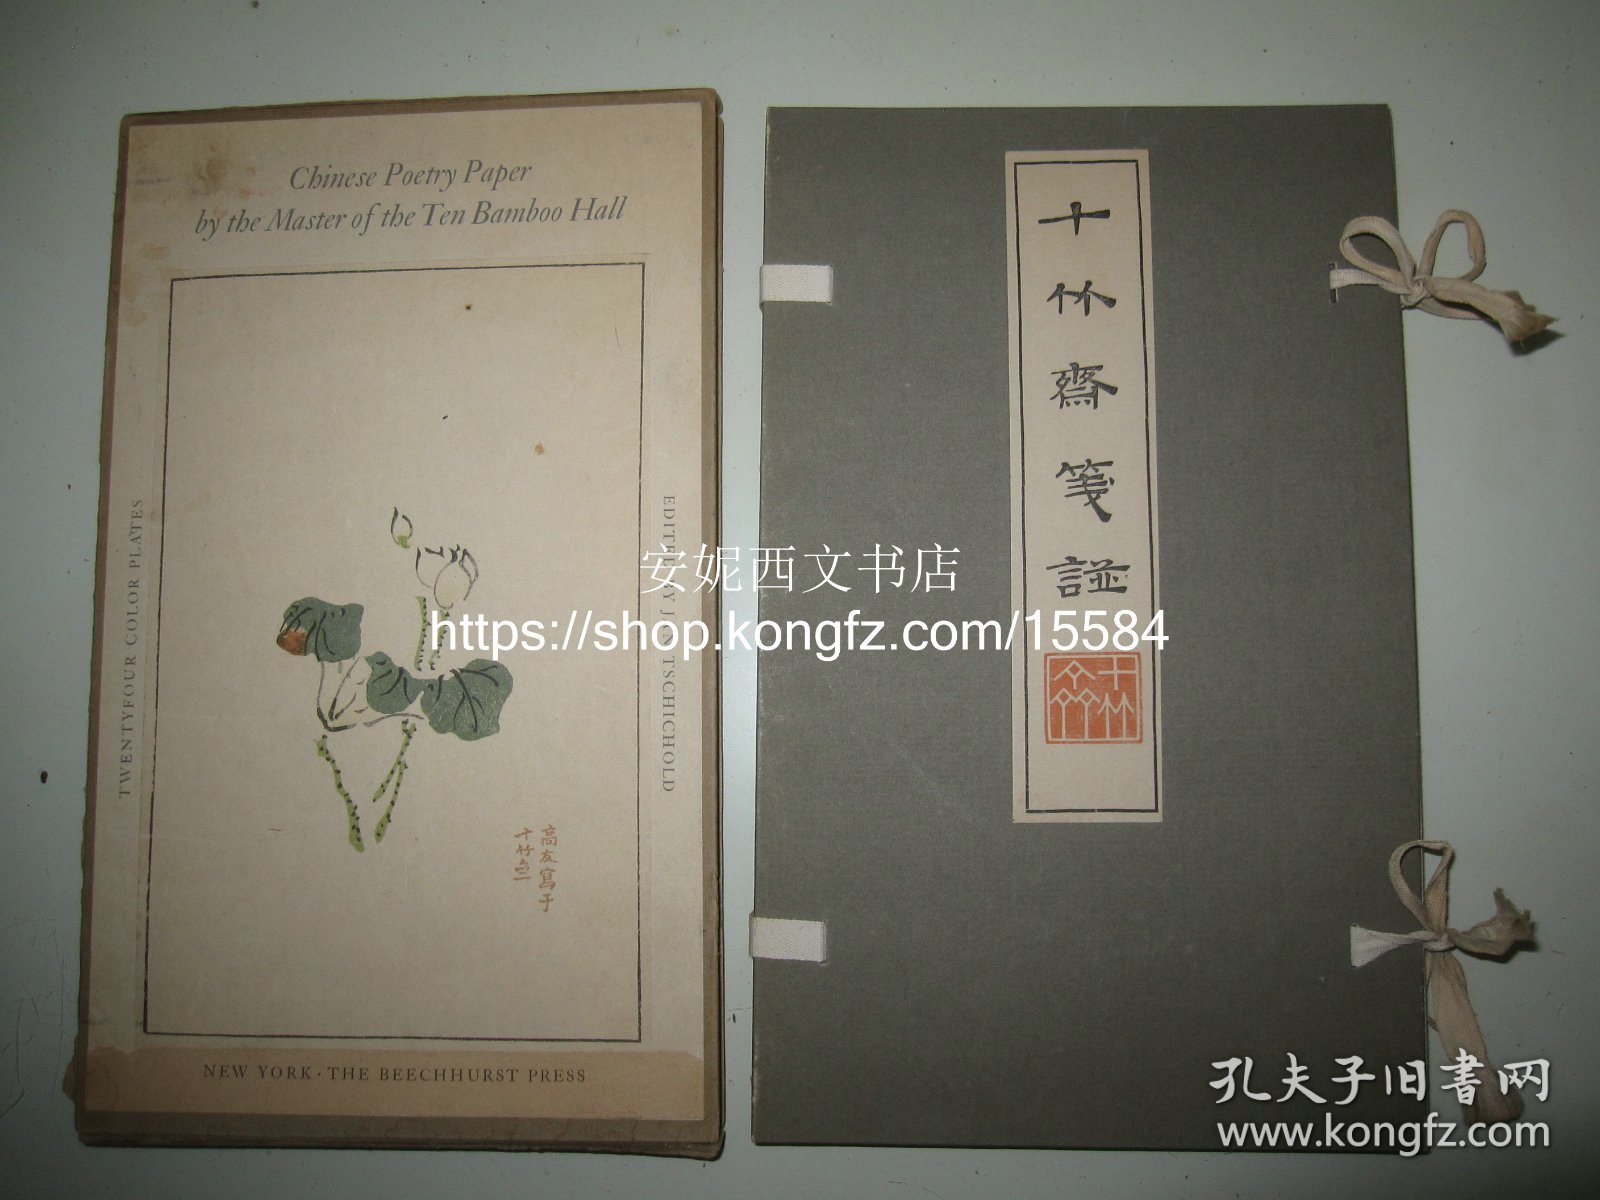 1951年英文版《十竹斋笺谱》----【瑞士著名书籍版式装帧大师契鲍尔德设计 编选】，套色影印十竹斋笺谱24幅整张彩色作品，线装函套带夹板，筒子页 Chinese Poetry Paper By The Master Of The Ten Bamboo Hall